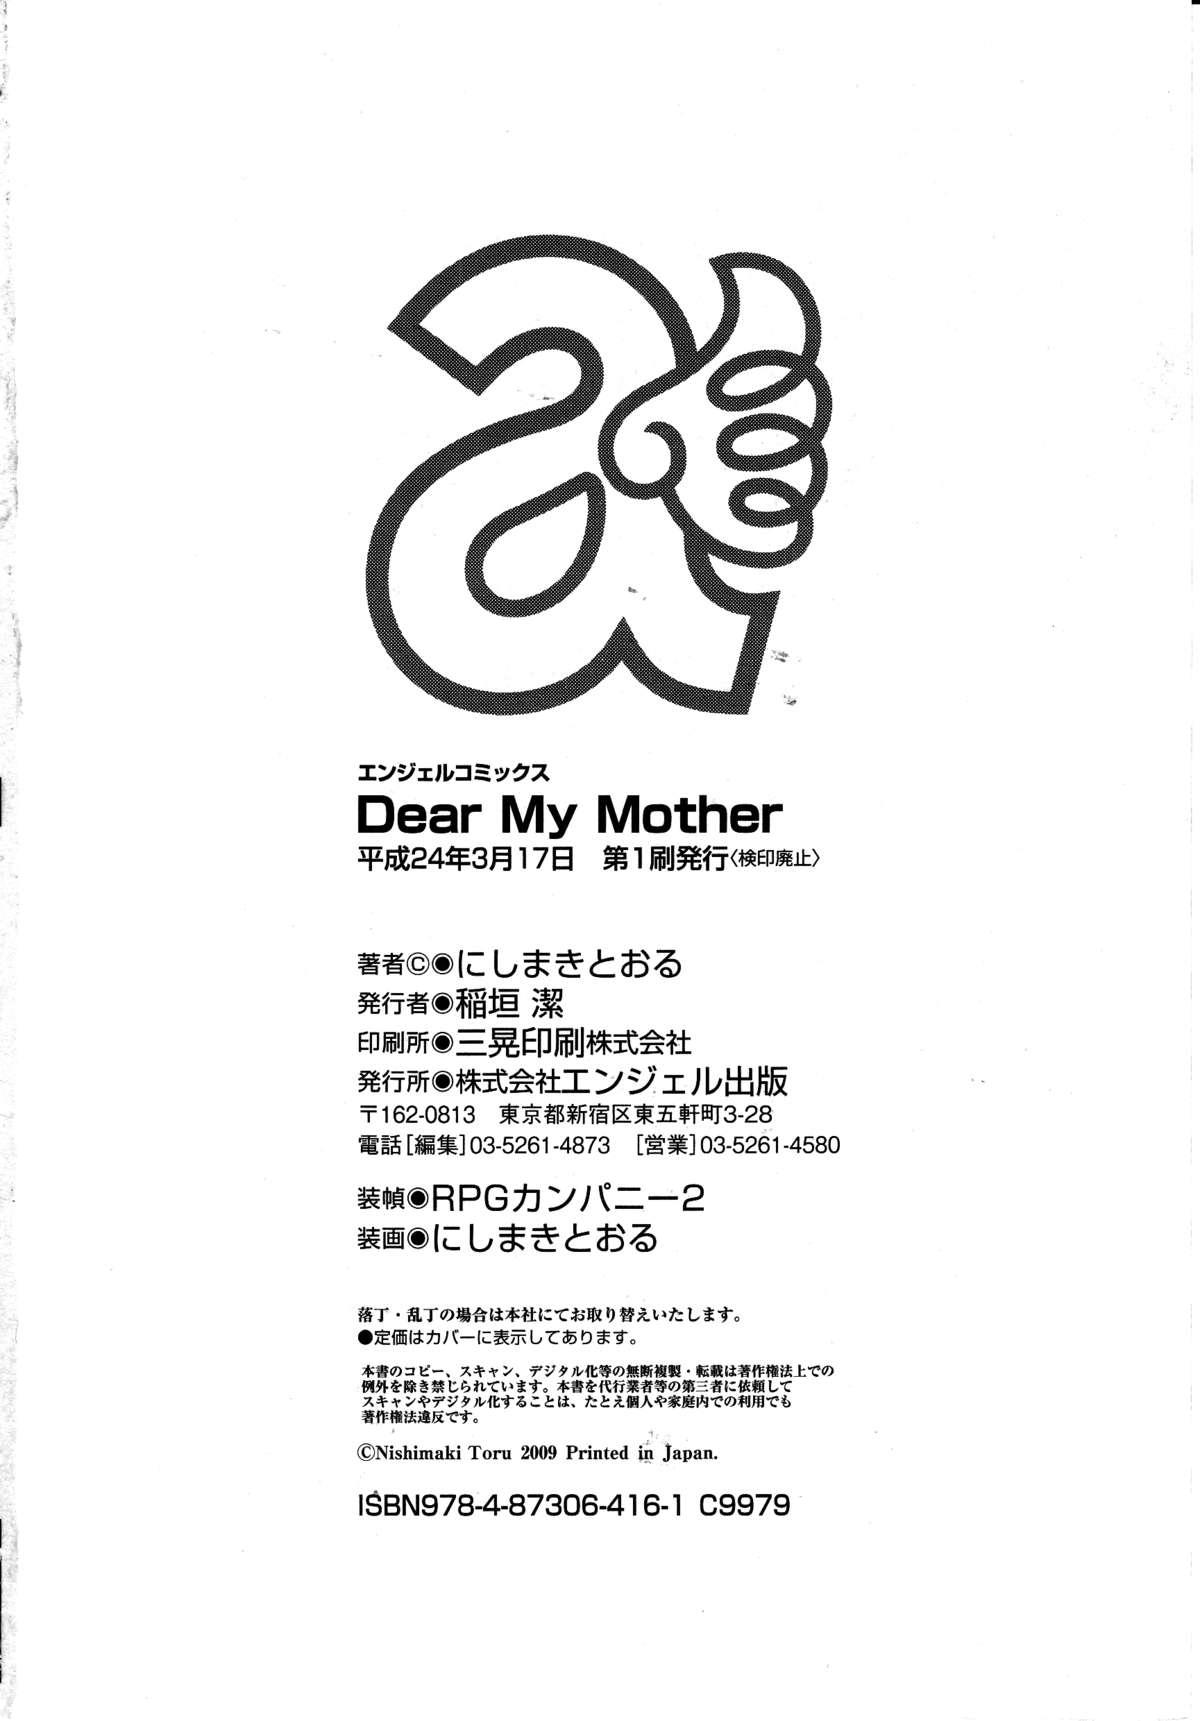 Dear My Mother 194